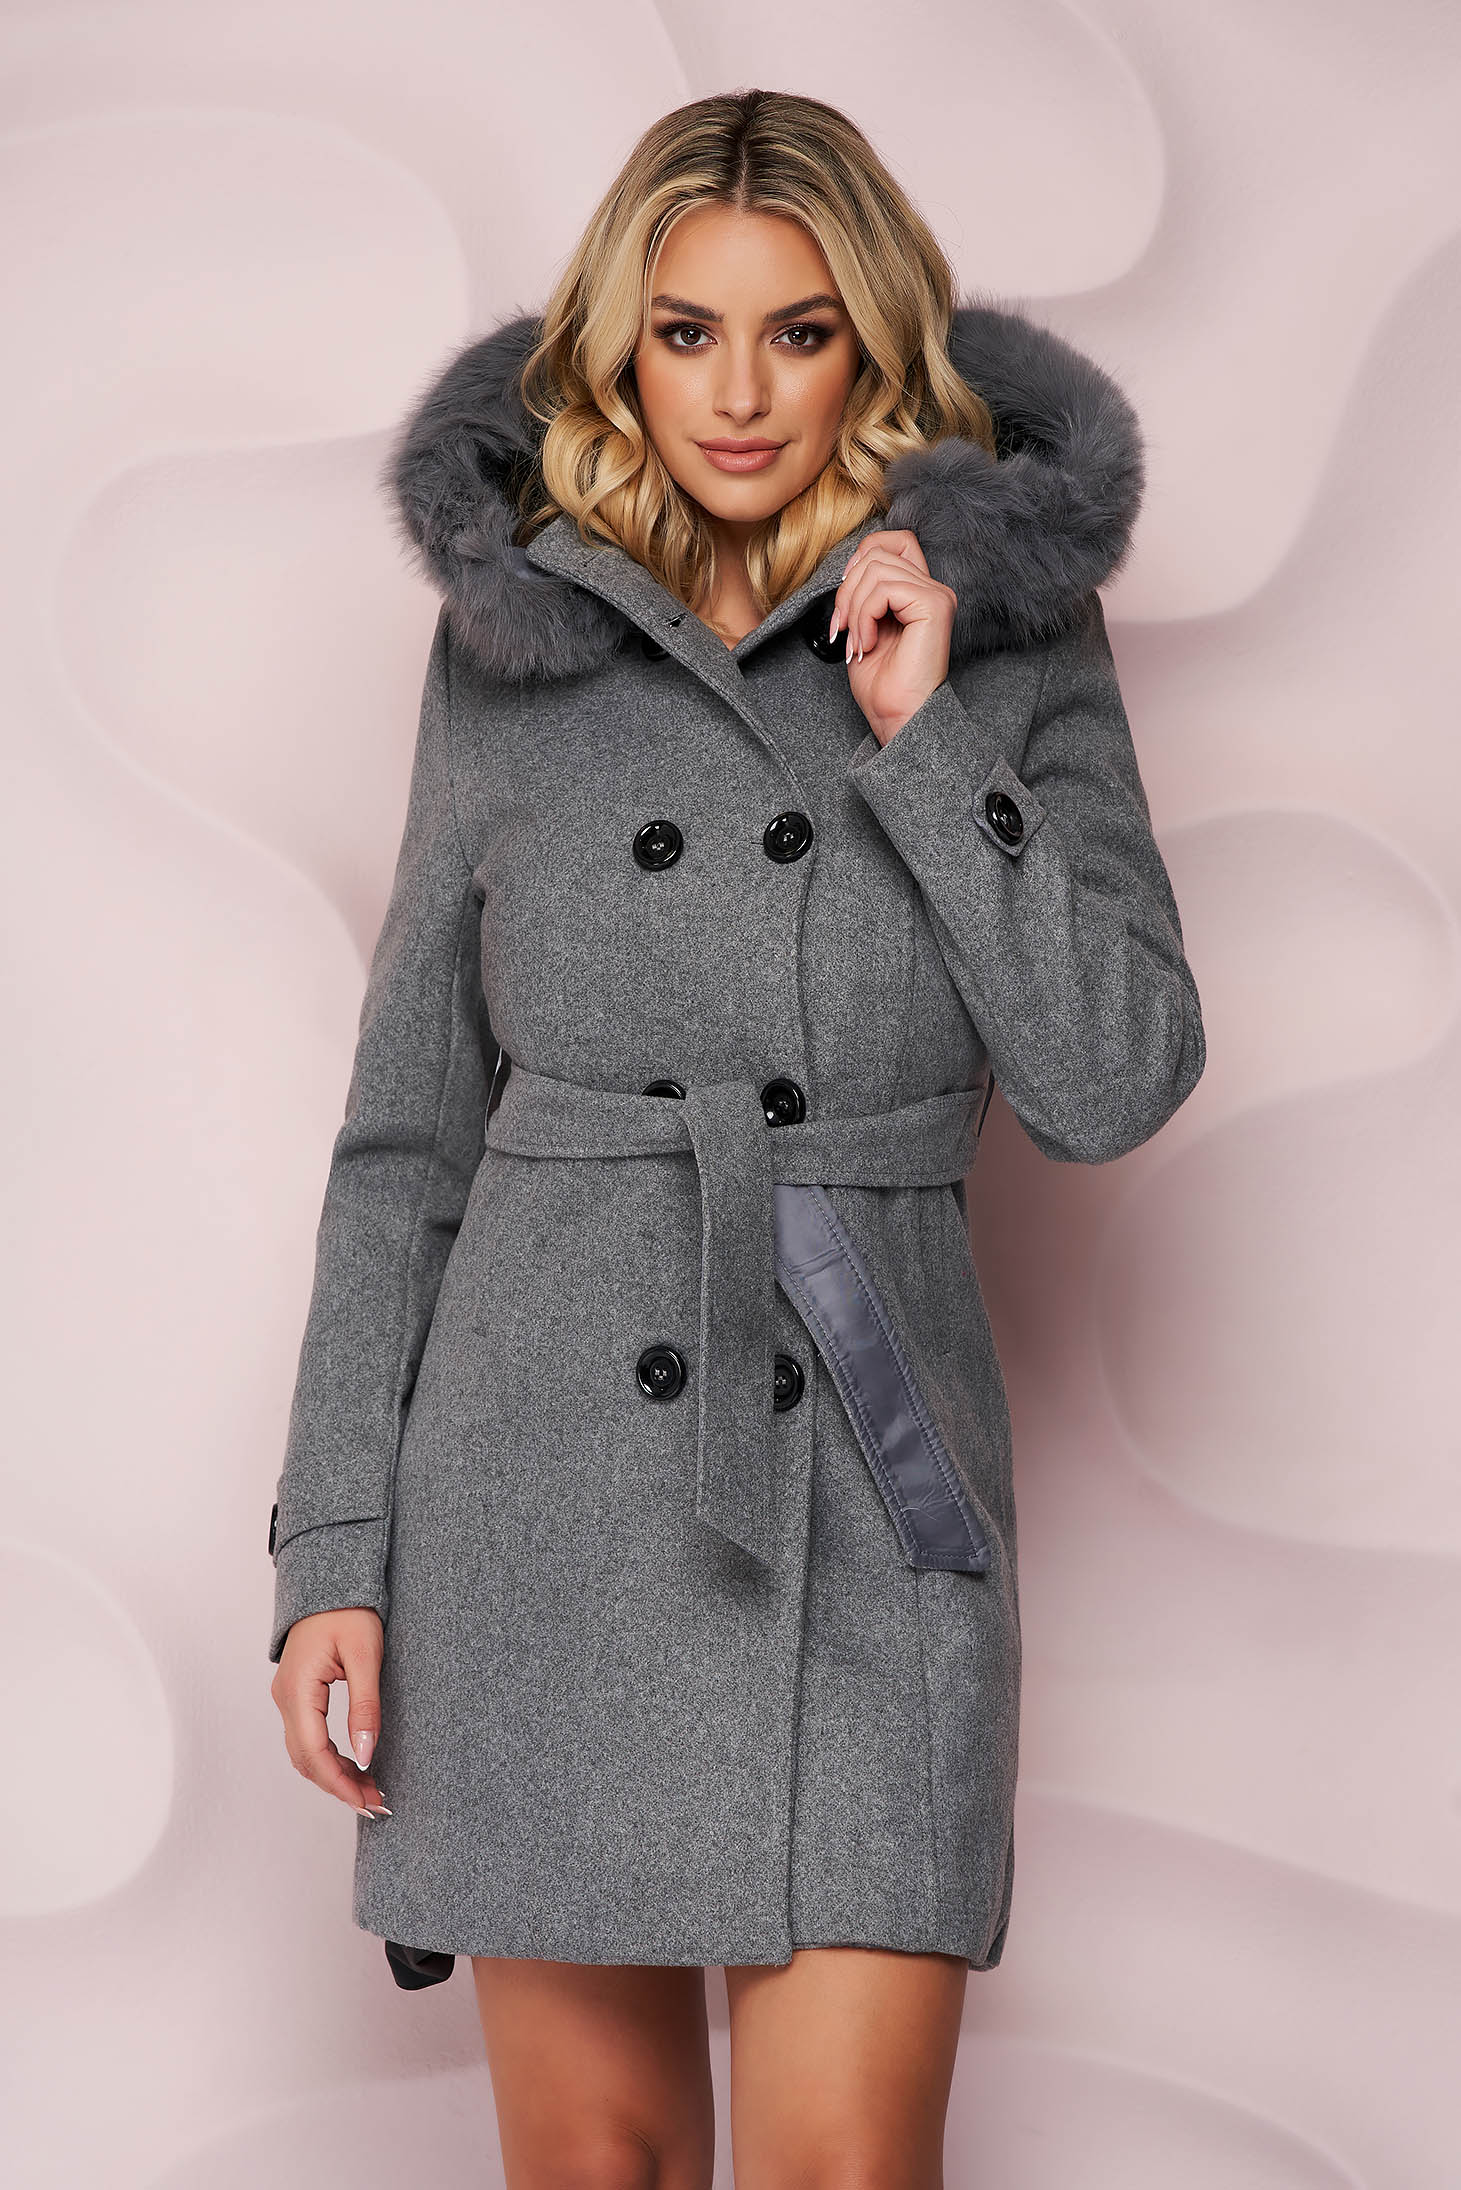 Palton din lana SunShine gri elegant cu un croi cambrat cu insertii de blana ecologica detasabile